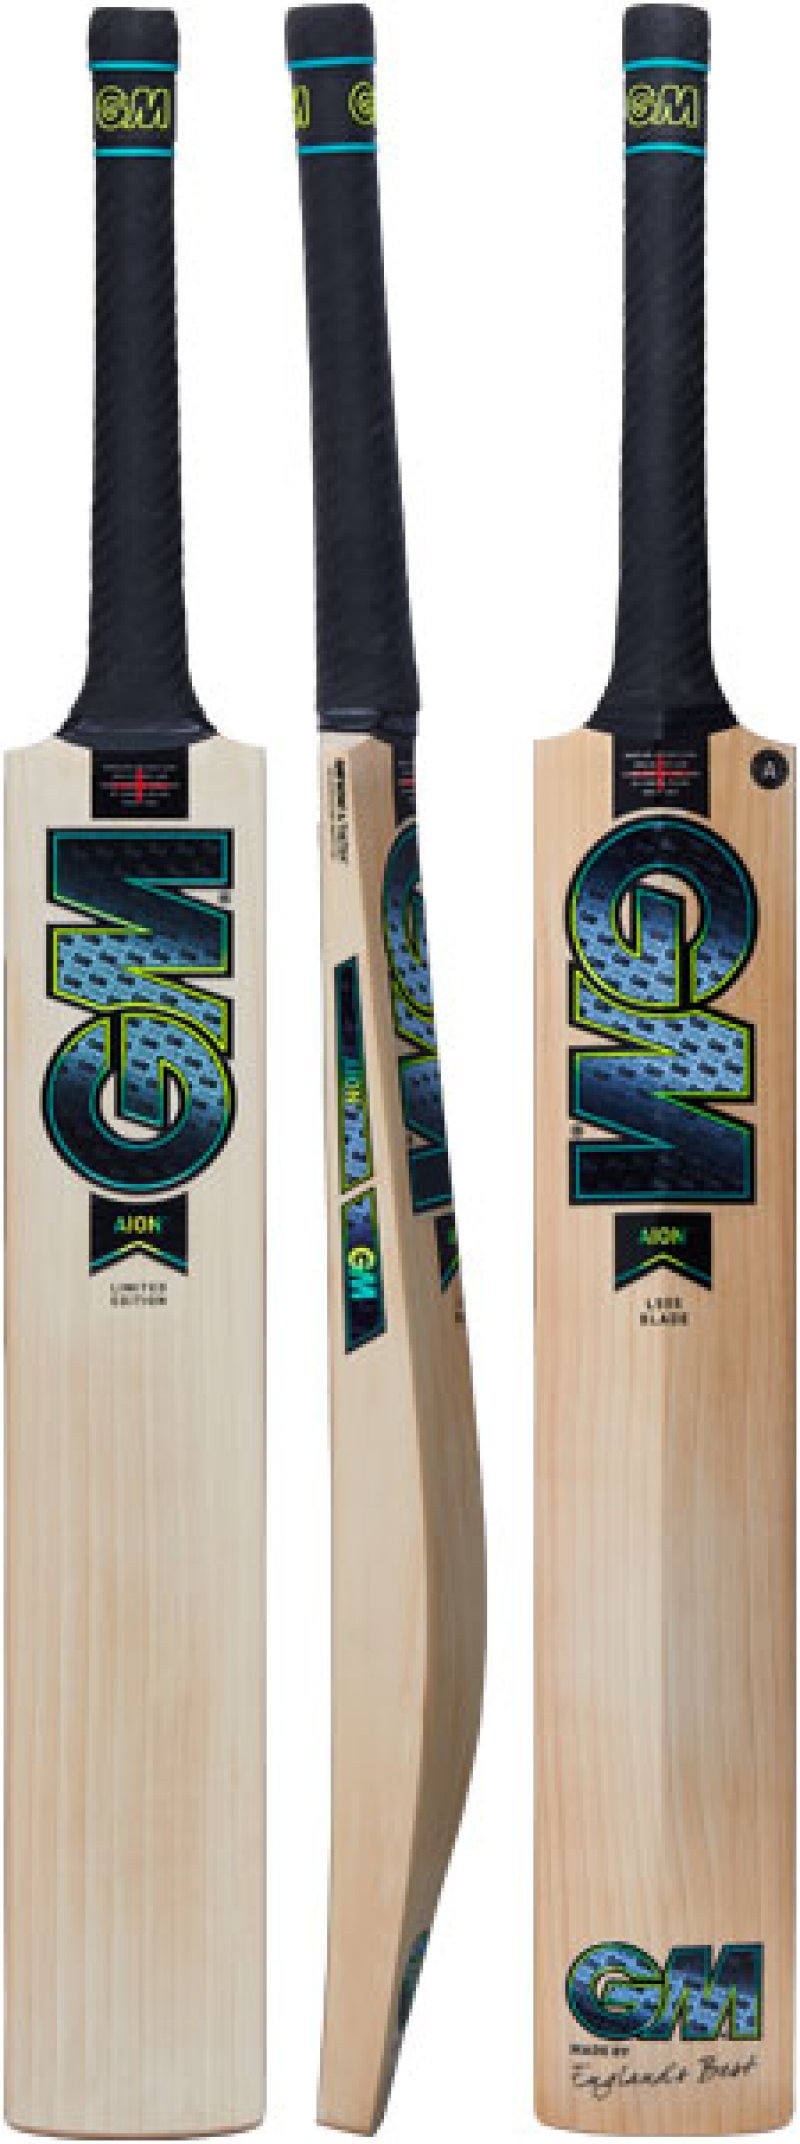 Gunn and Moore Aion L555 DXM 606 Cricket Bat